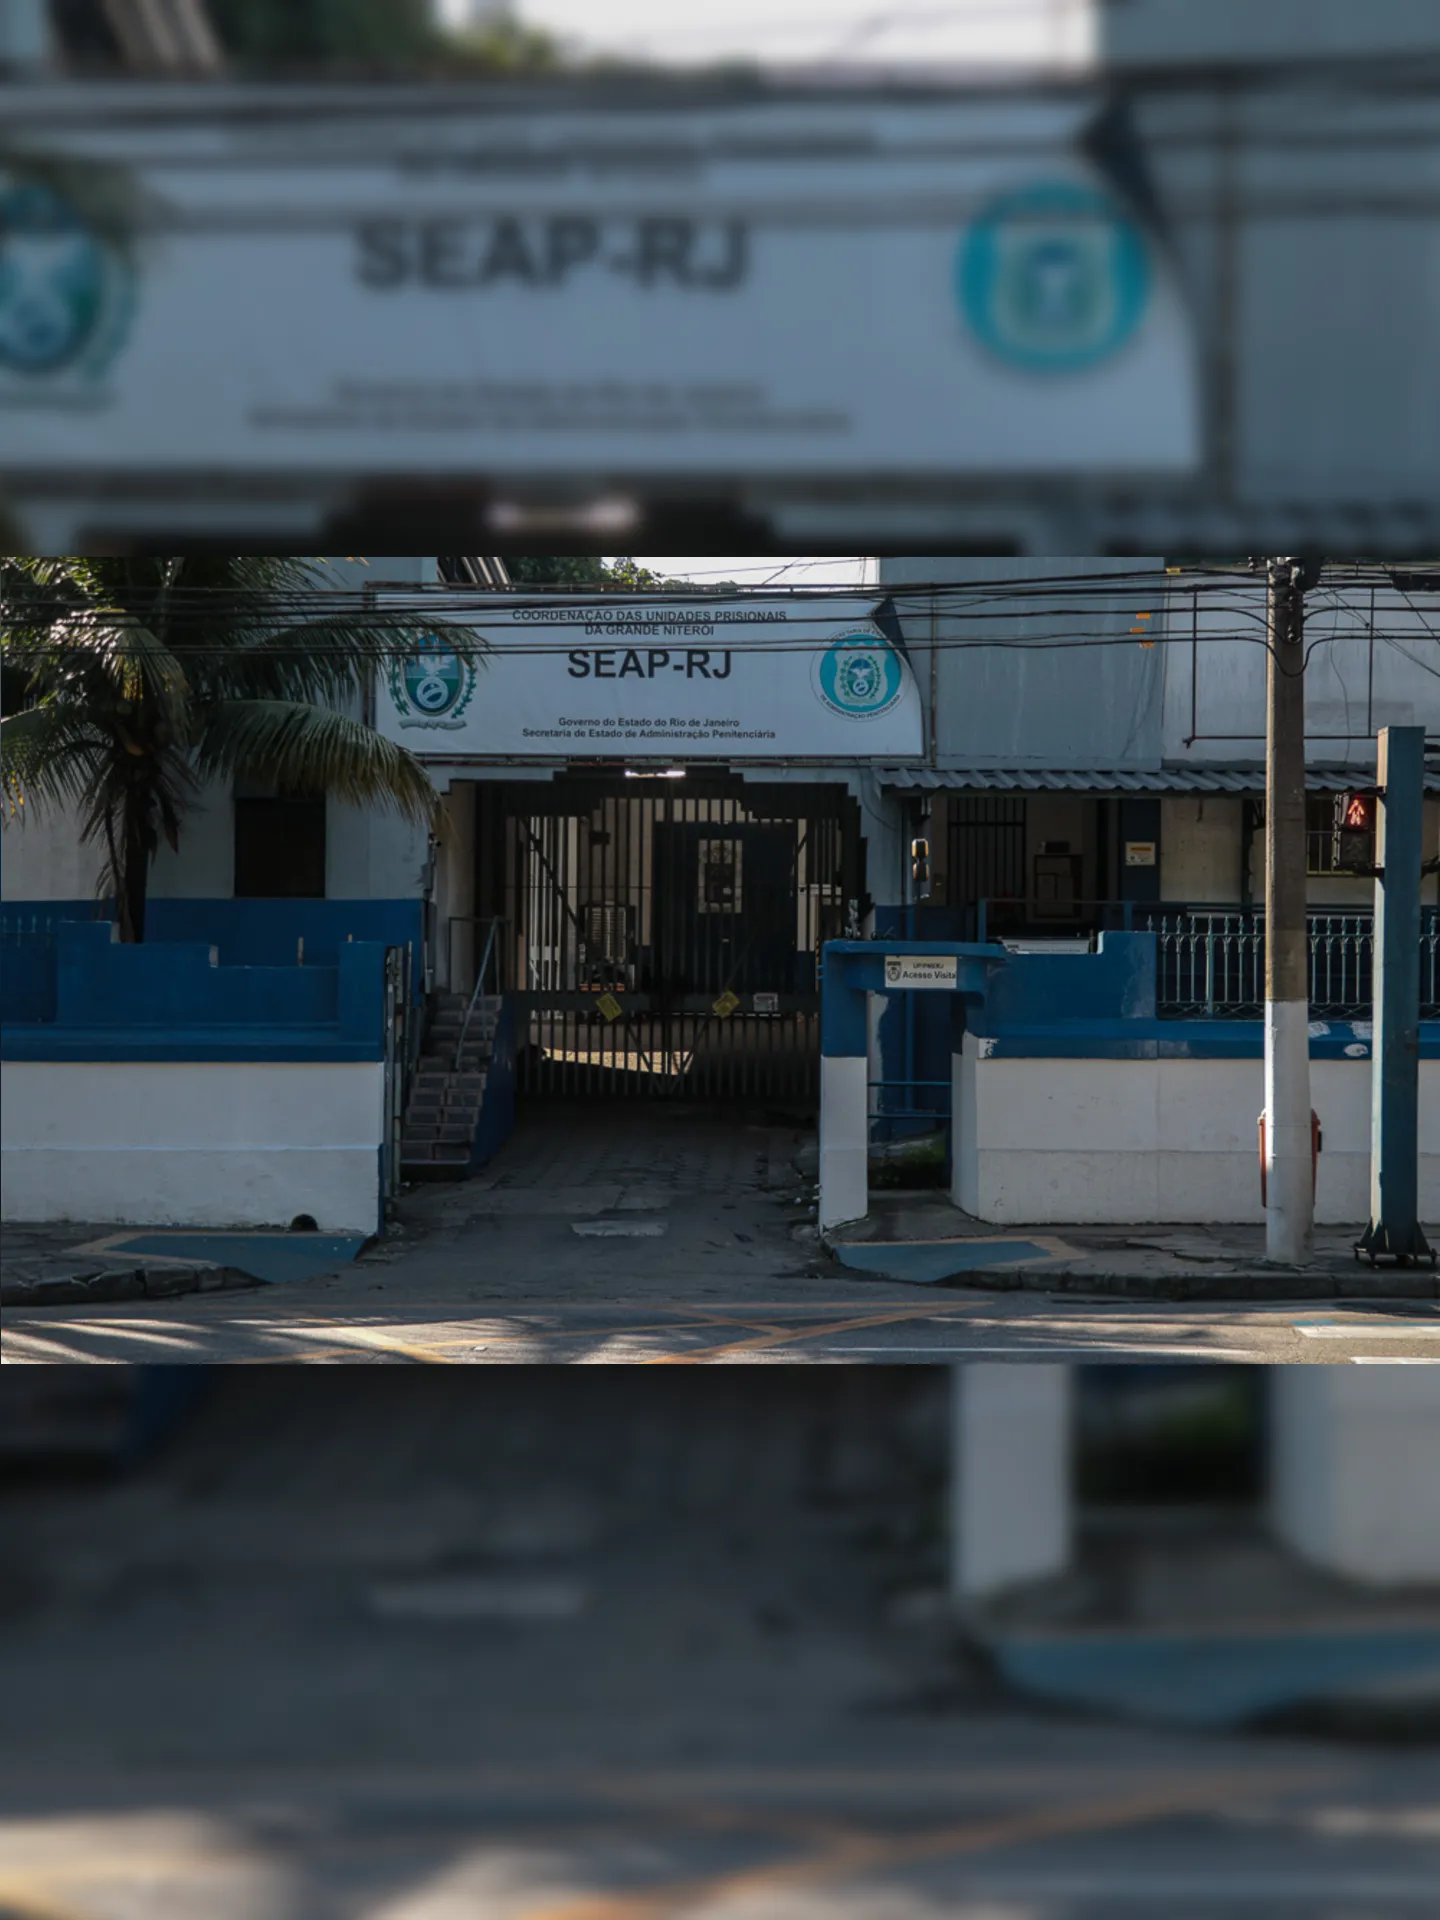 Acusado de roubos em série foi levado para a Unidade Prisional da Corporação, em Niterói